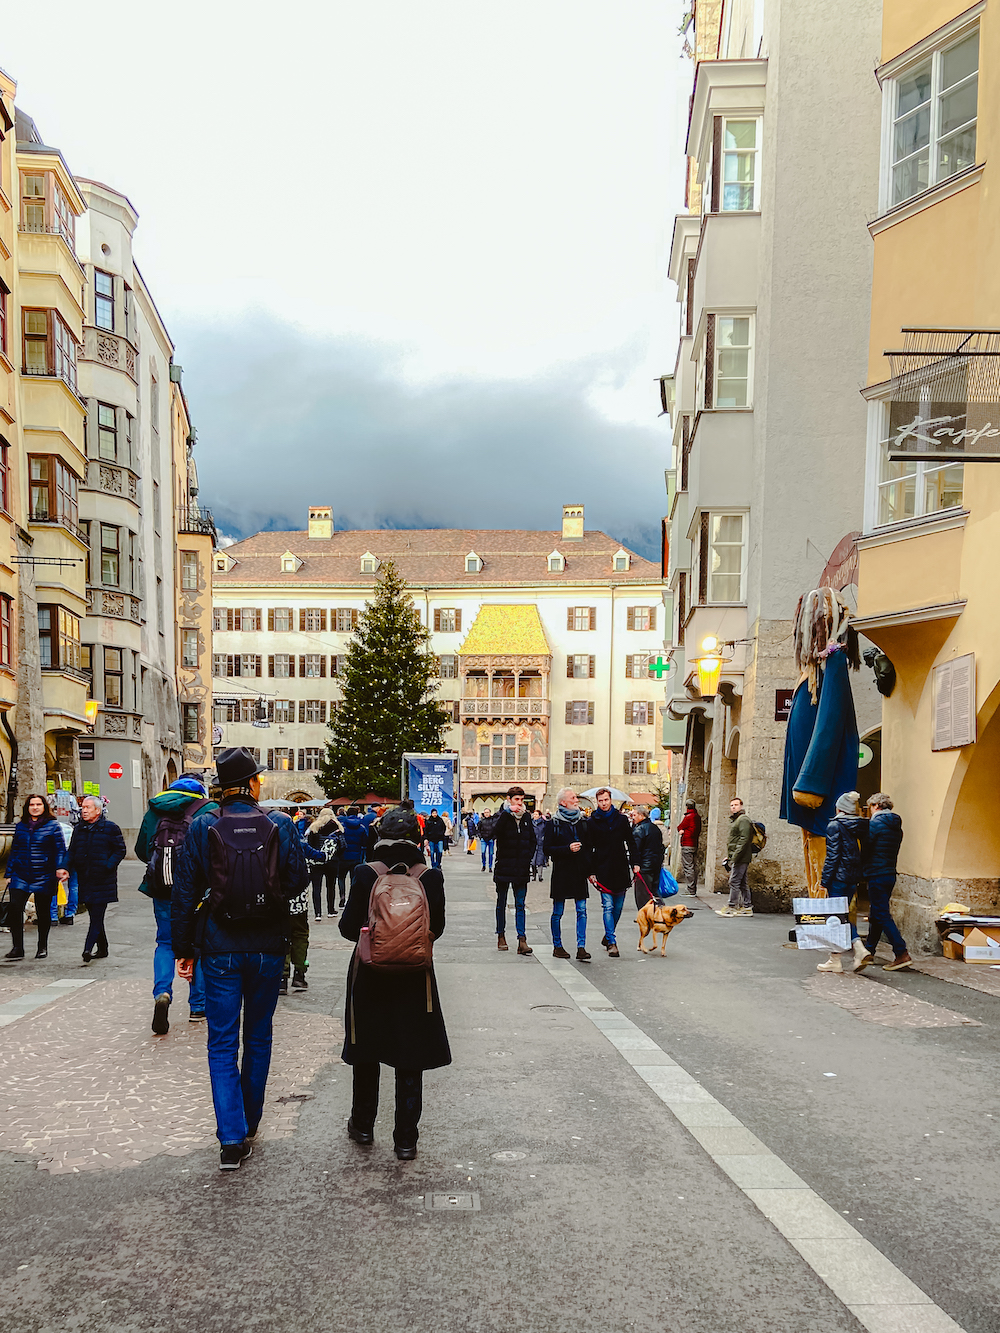 Wandelen door de straten van Innsbruck